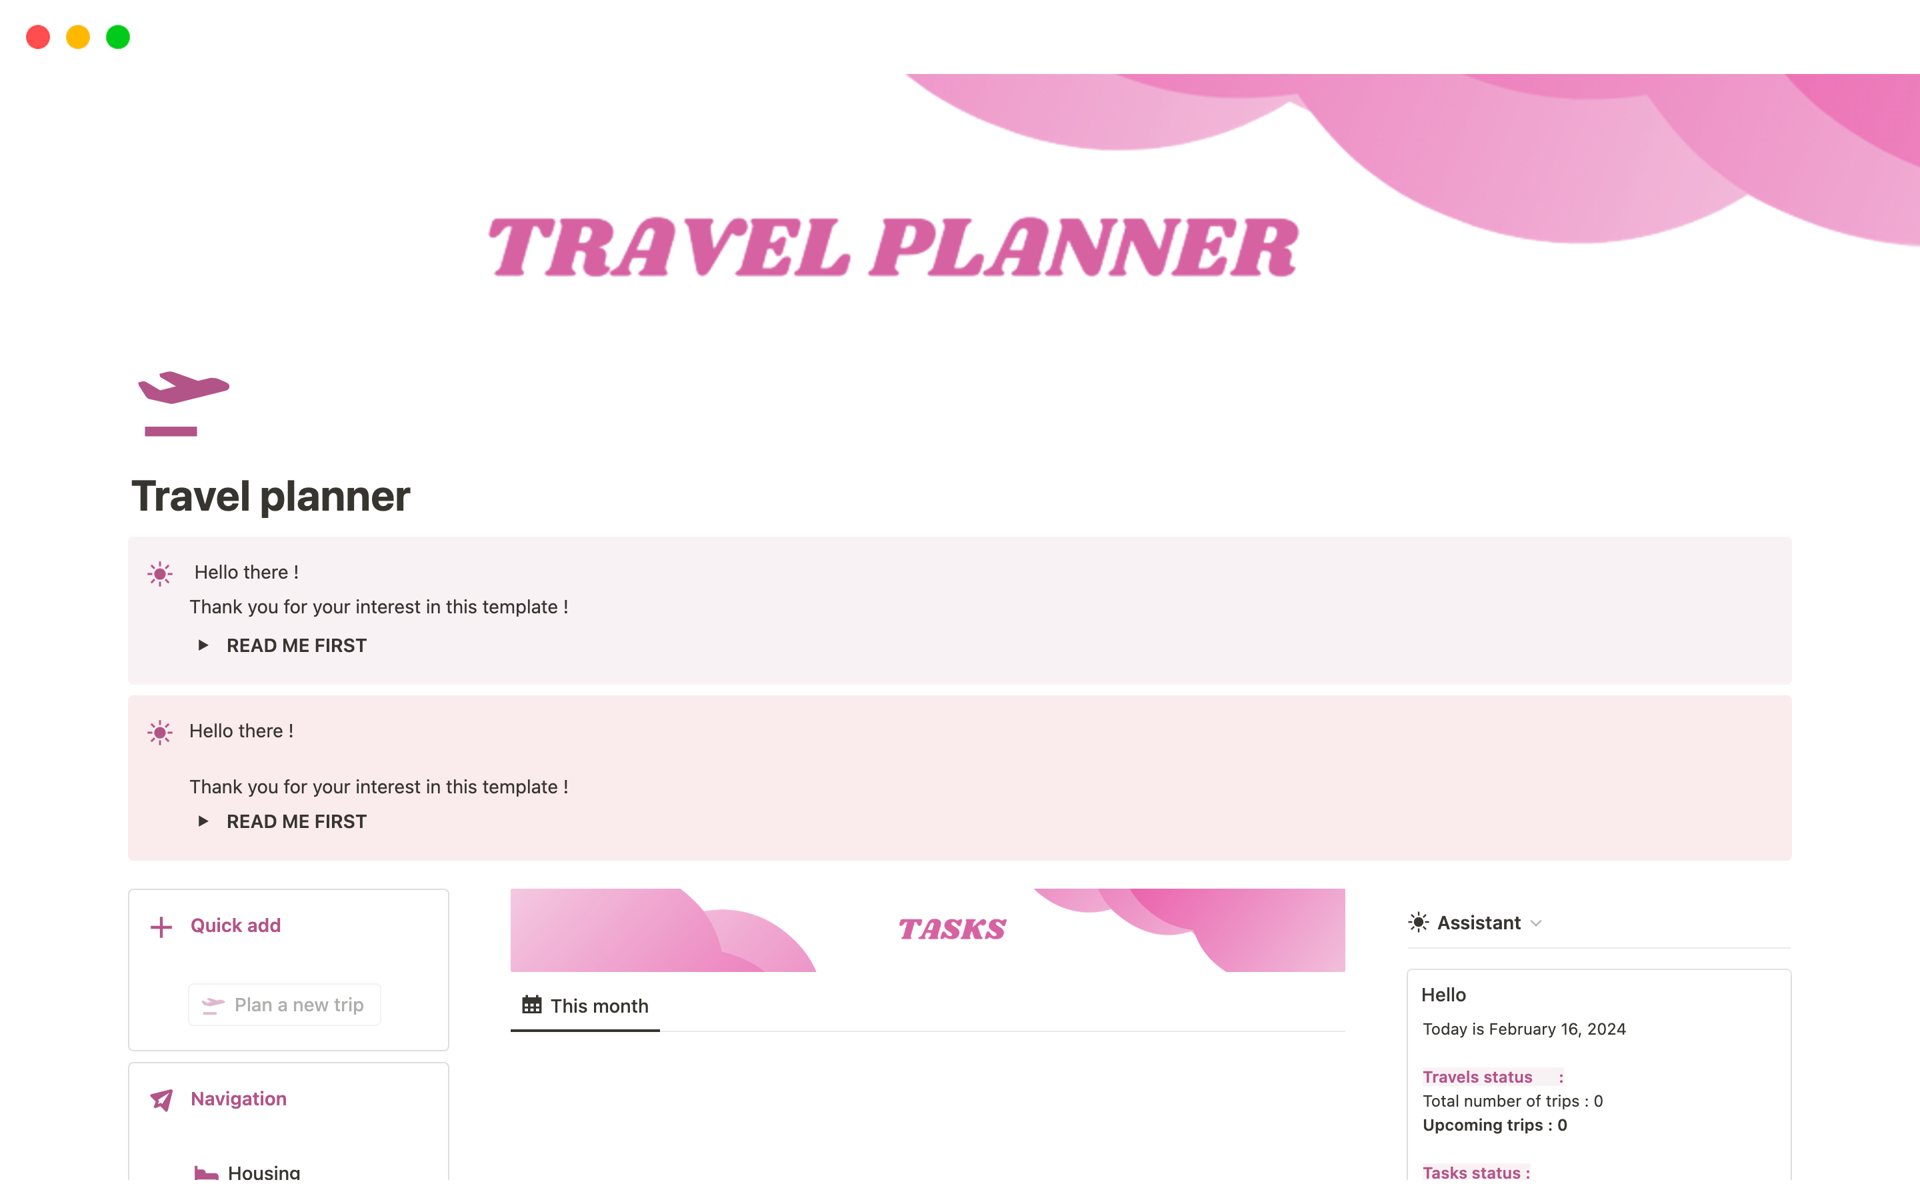 Uma prévia do modelo para Travel planner